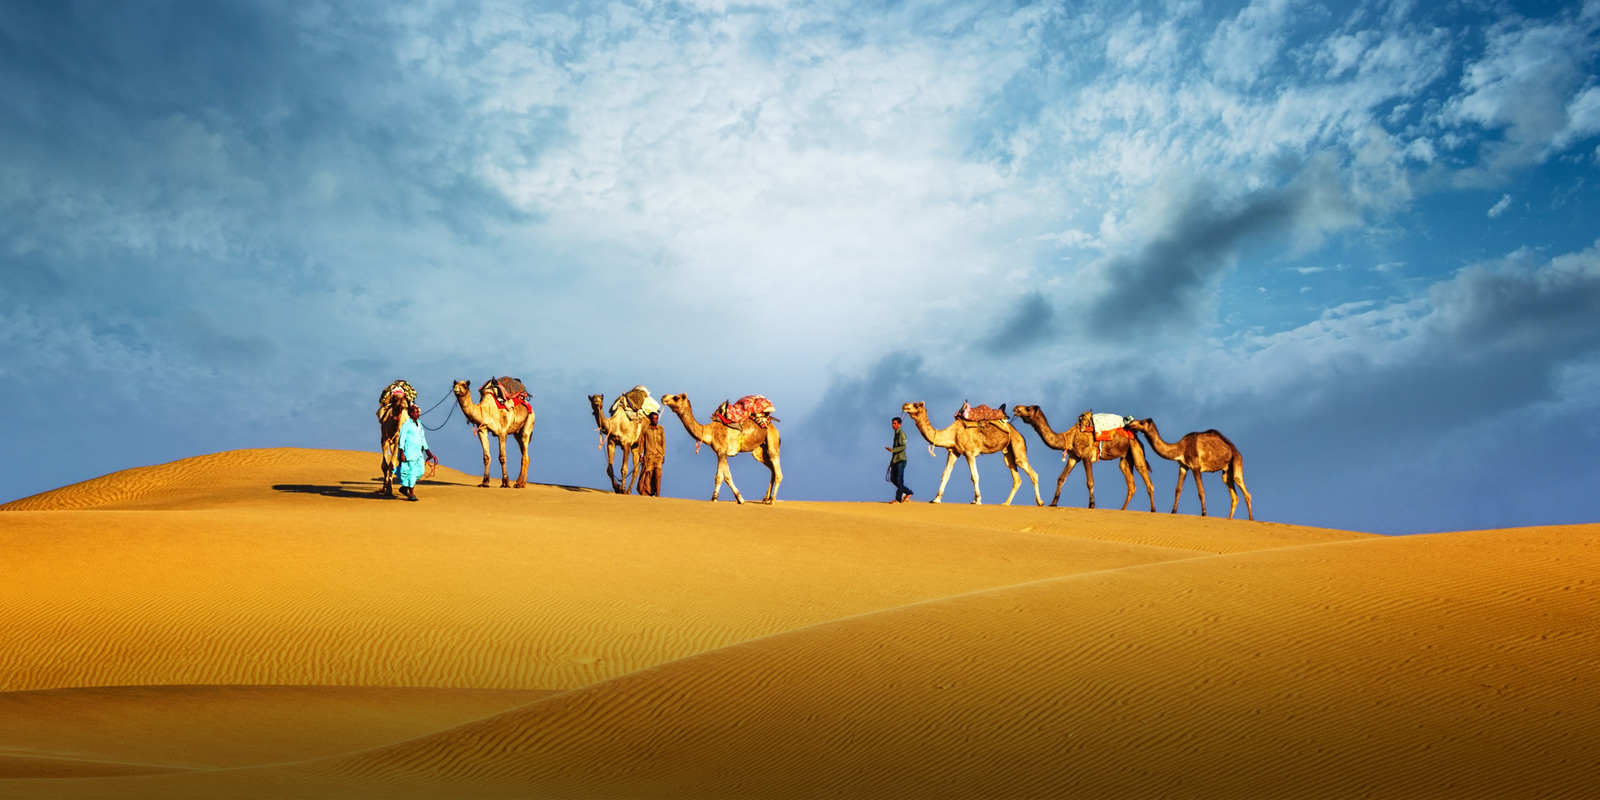 Kameler och dess skötare på vandring i öken i Dubai.